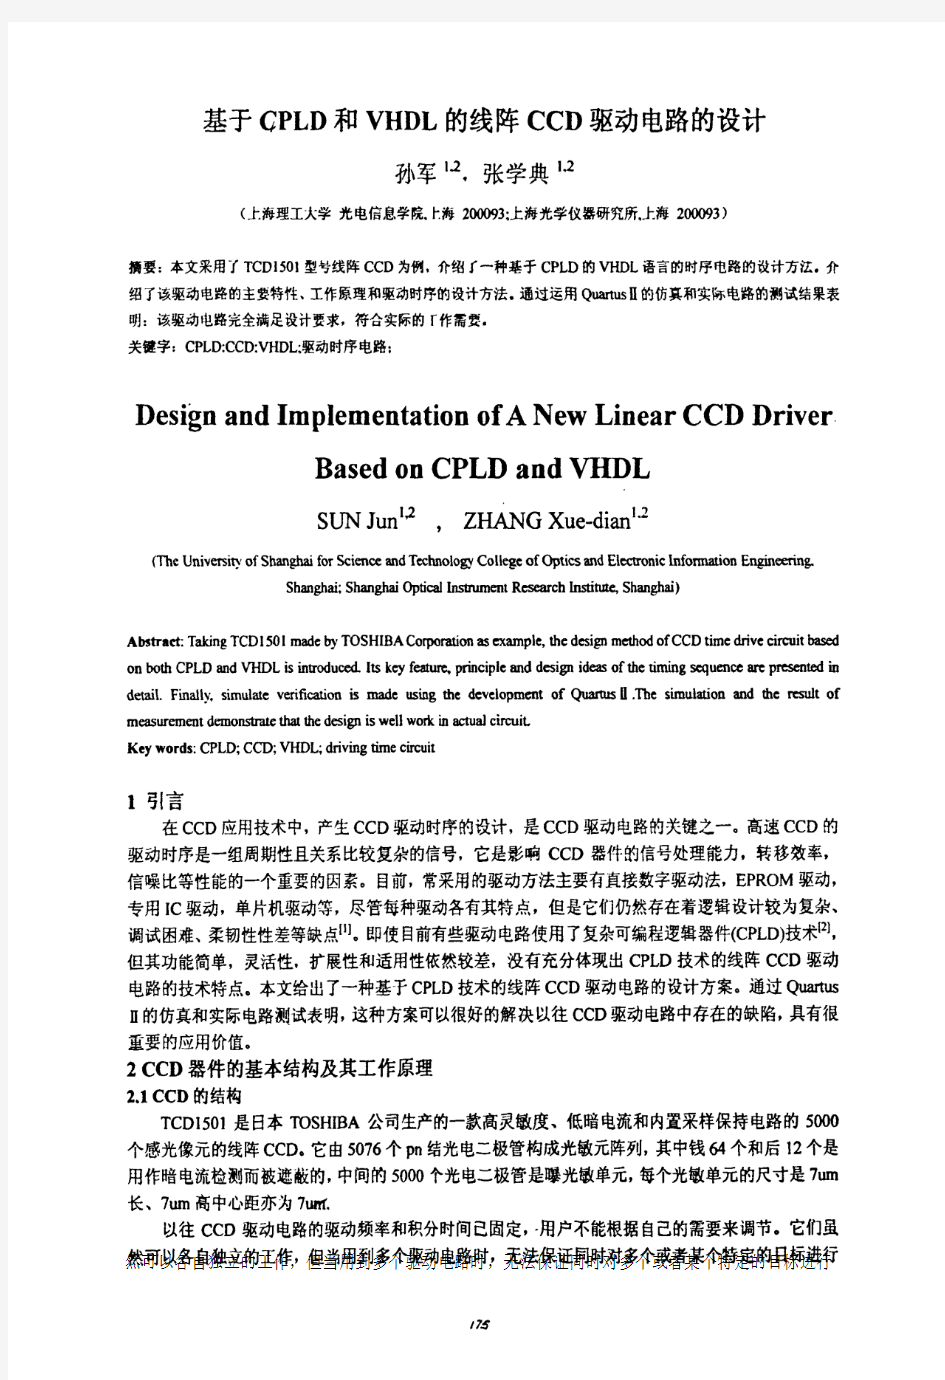 基于CPLD和VHDL的线阵CCD驱动电路的设计